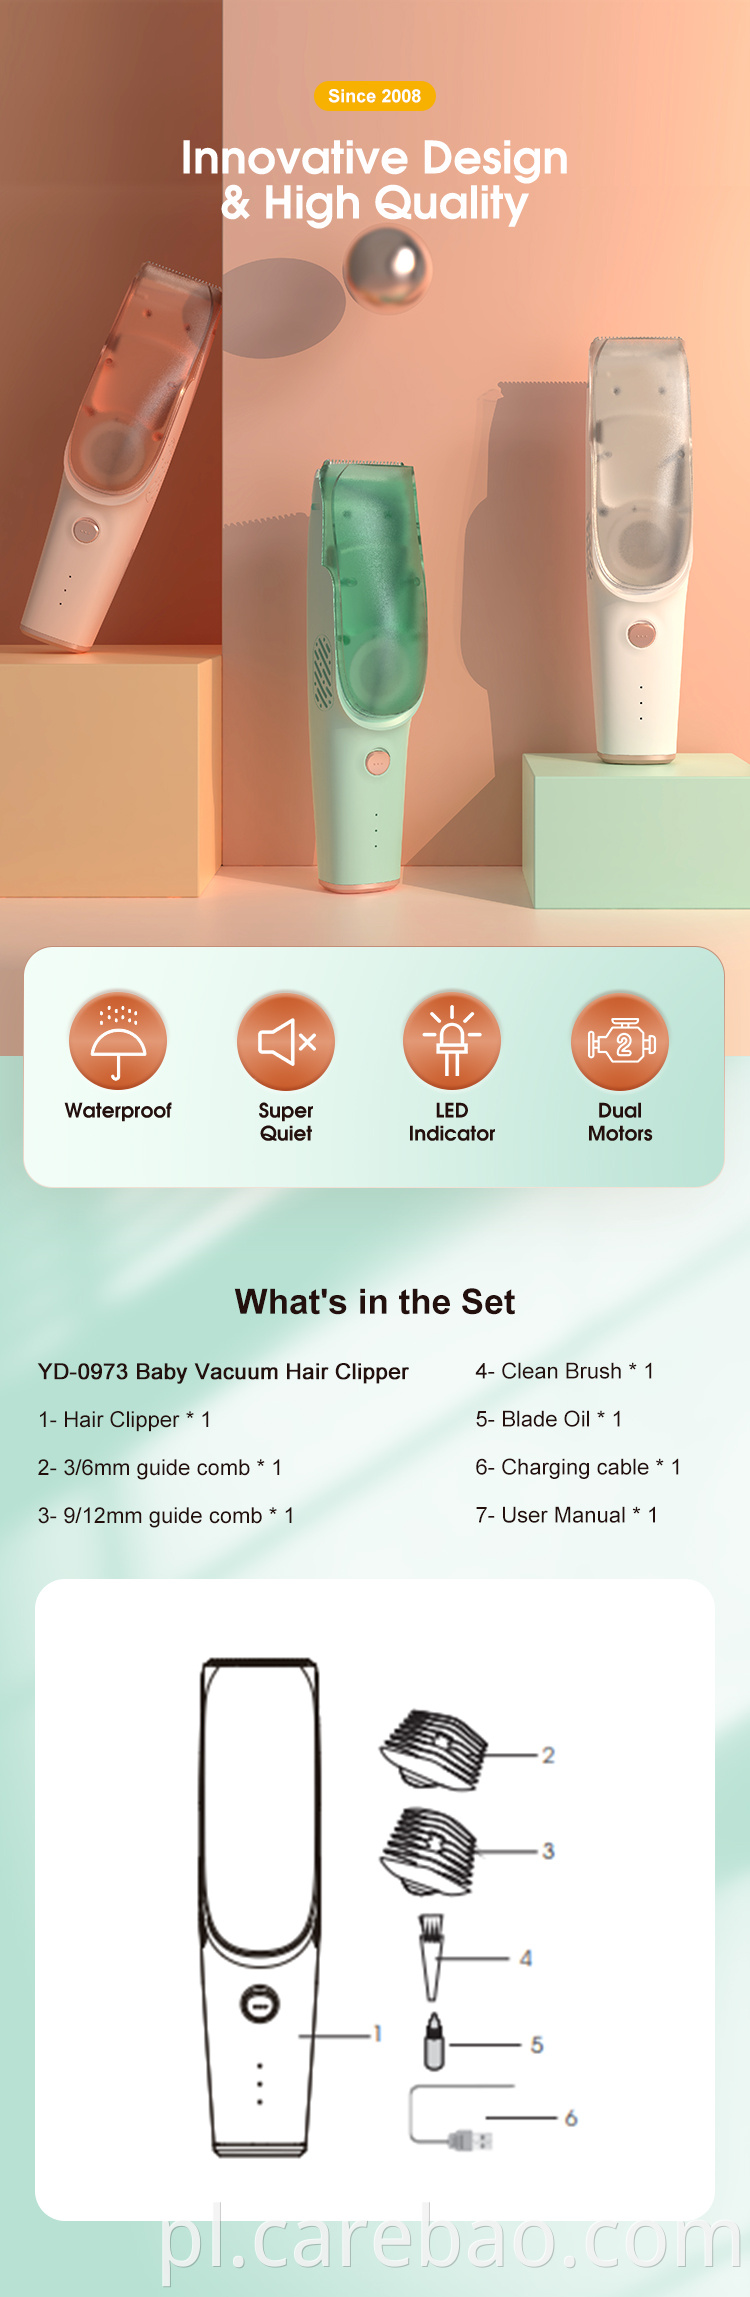 Nowoczesny design Baby Hair Hair Clipper Trimmer do użytku domowego z ceramicznymi ostrzami ze stali nierdzewnej